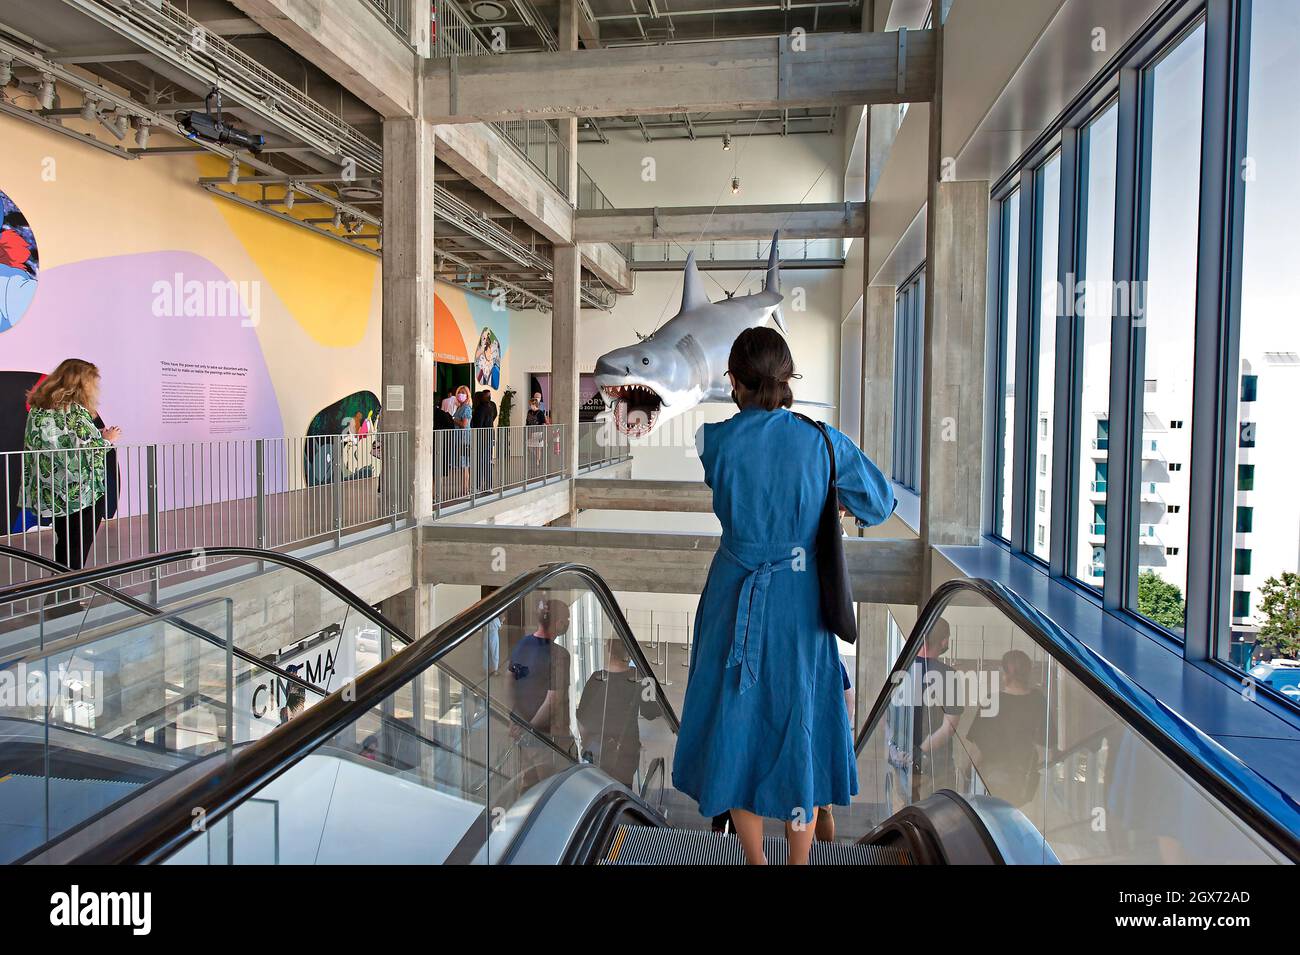 Frau auf der Rolltreppe unter einem Shark-Modell aus dem Film Jaws, das im Academy Museum of Motion Picturs in Los Angeles, Kalifornien, gezeigt wird Stockfoto